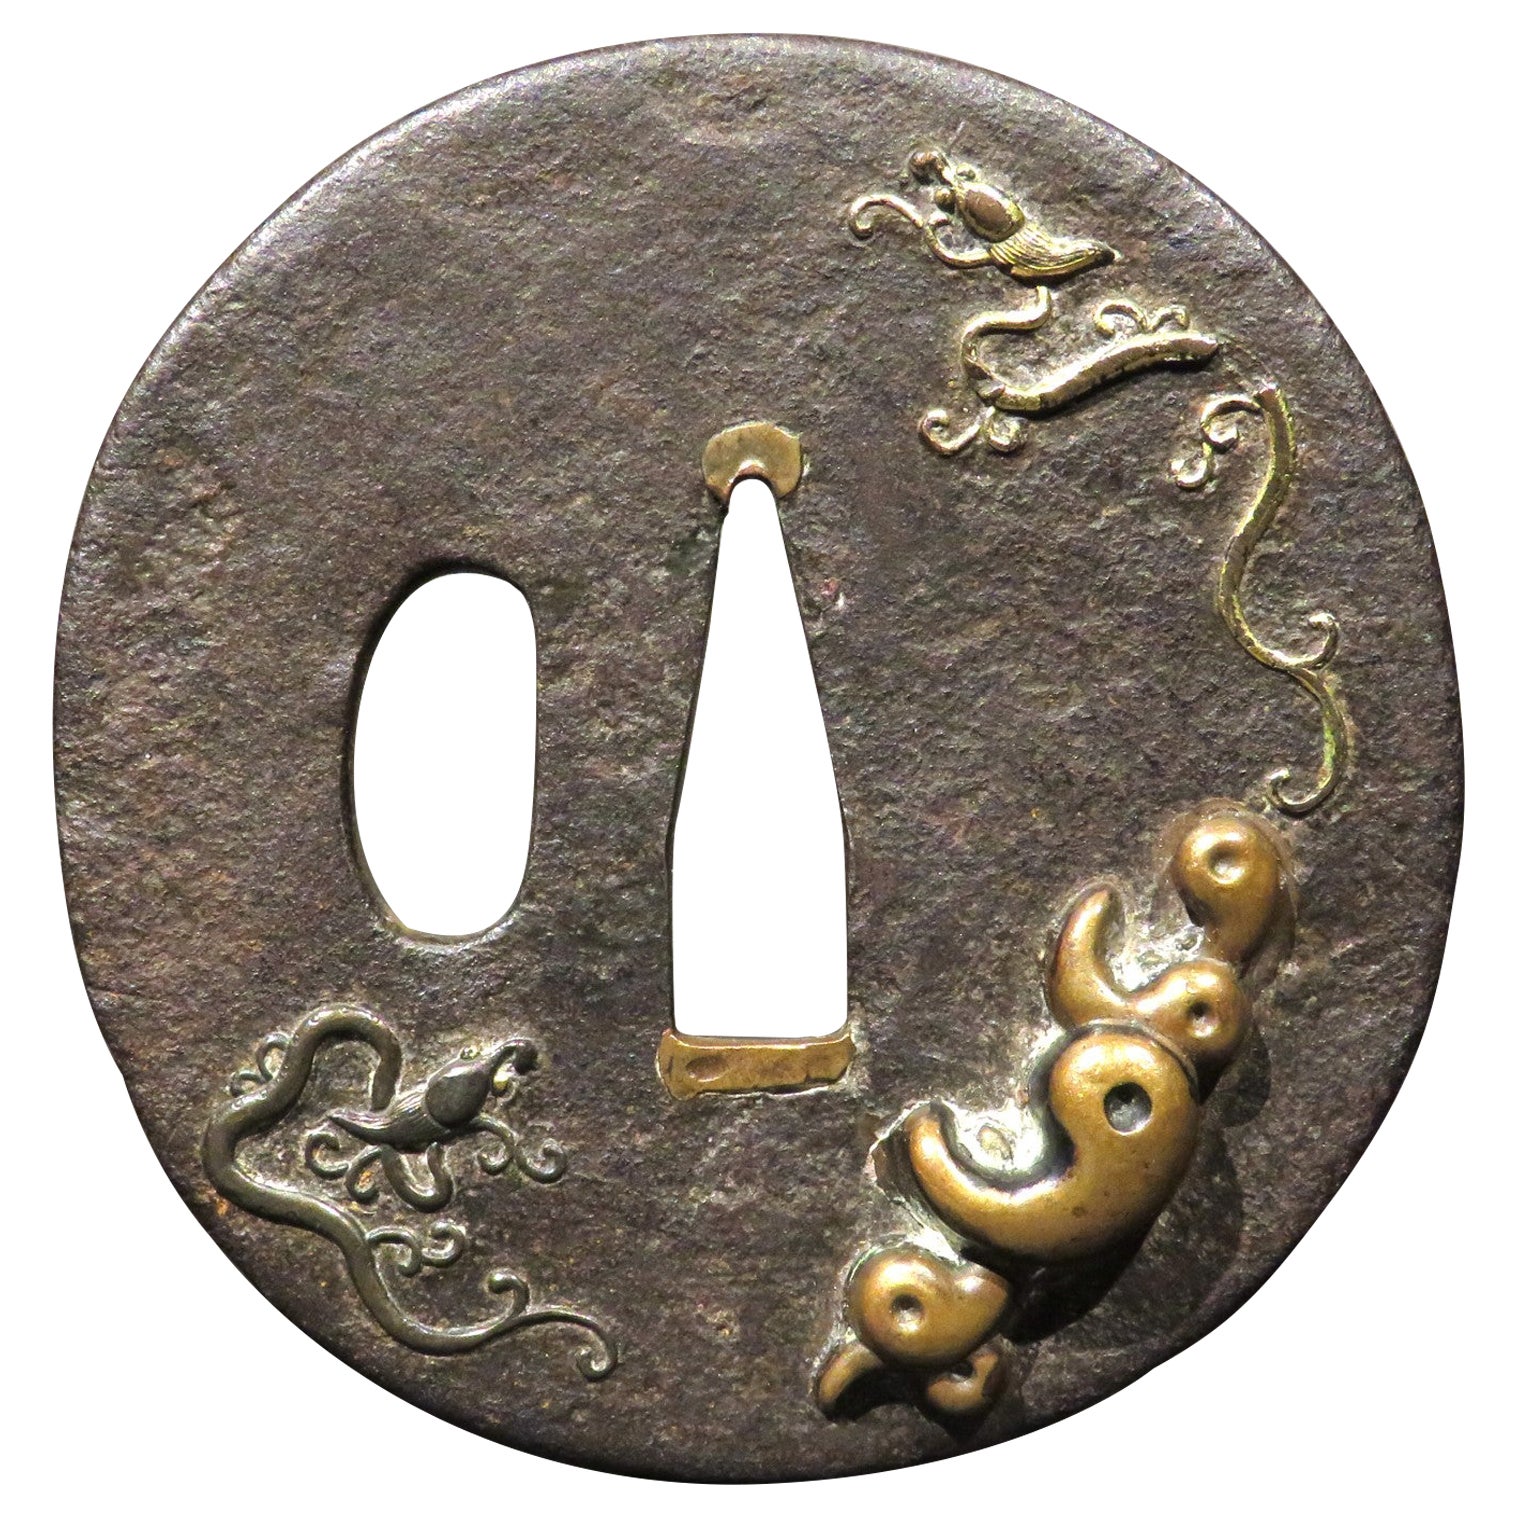 Très bon Tsuba du 19ème siècle en fer et métal mélangé, période Edo du Japon (1603-1868)